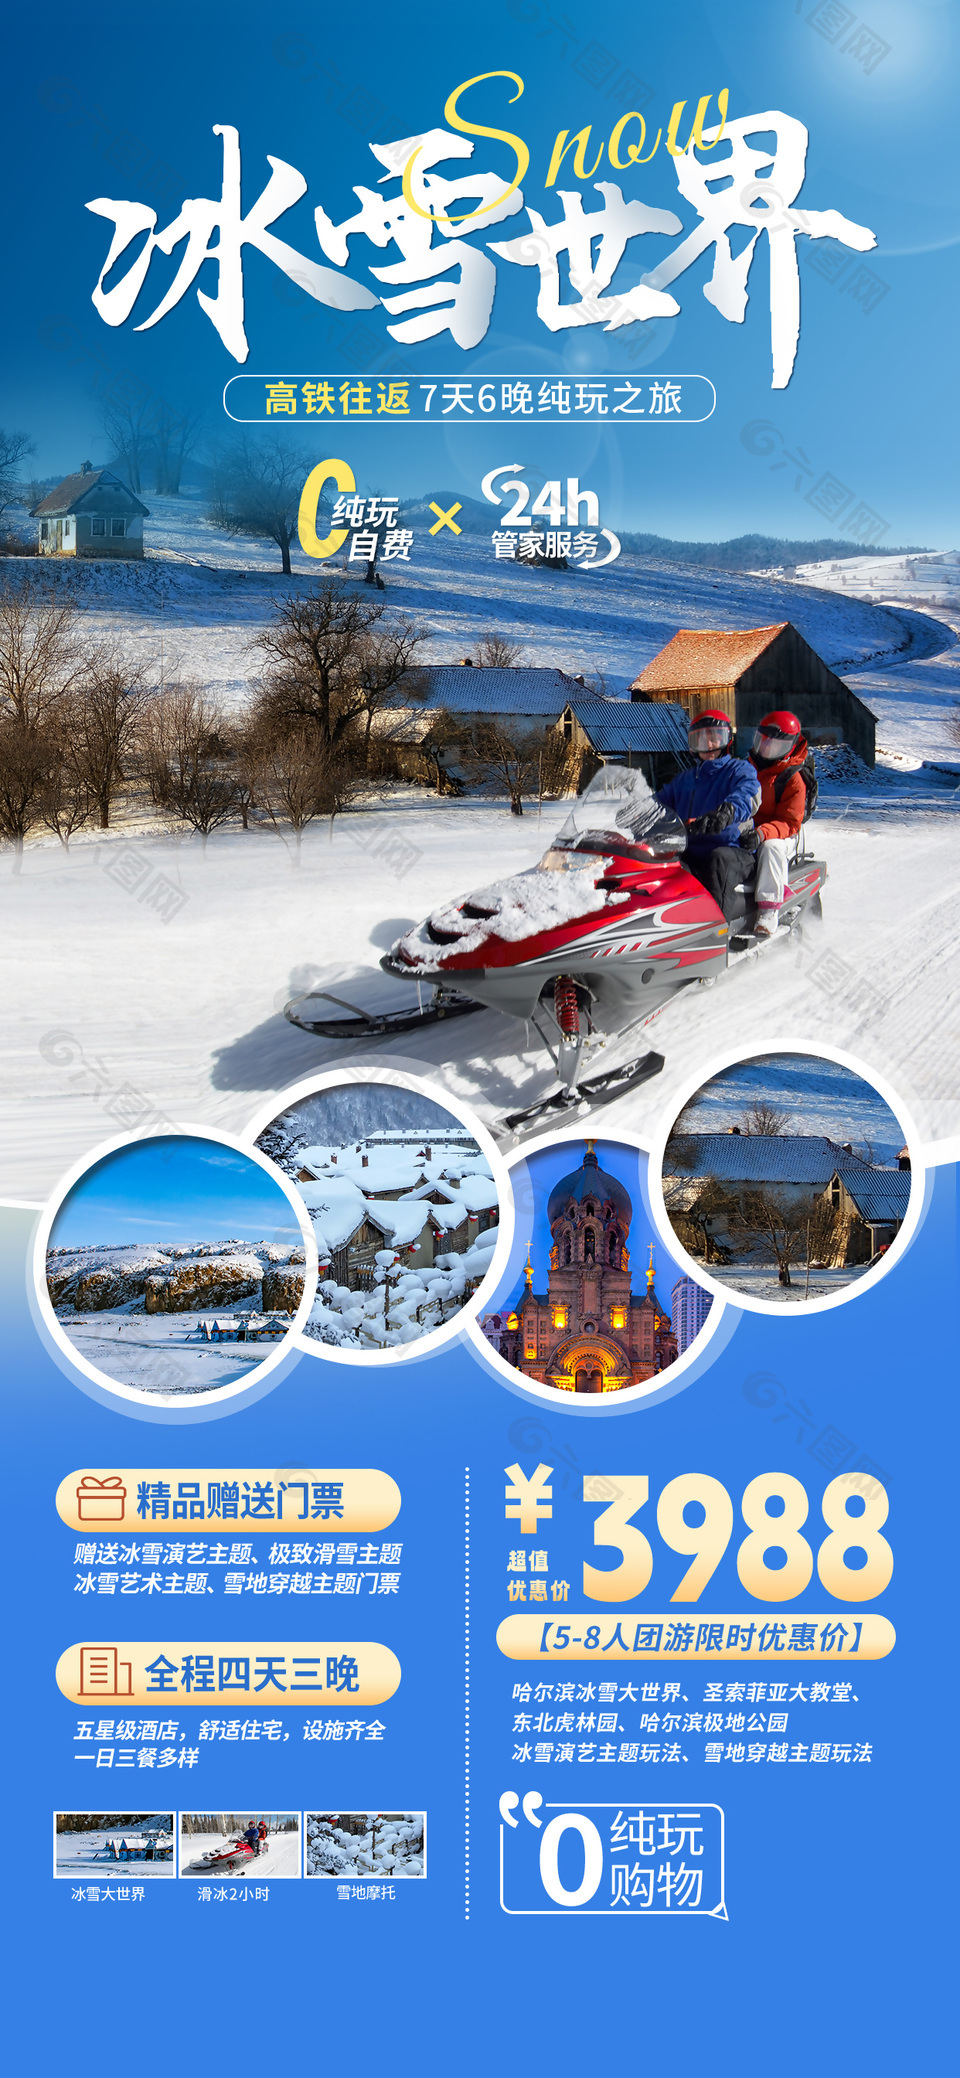 冰雪世界纯玩之旅旅游宣传单模版